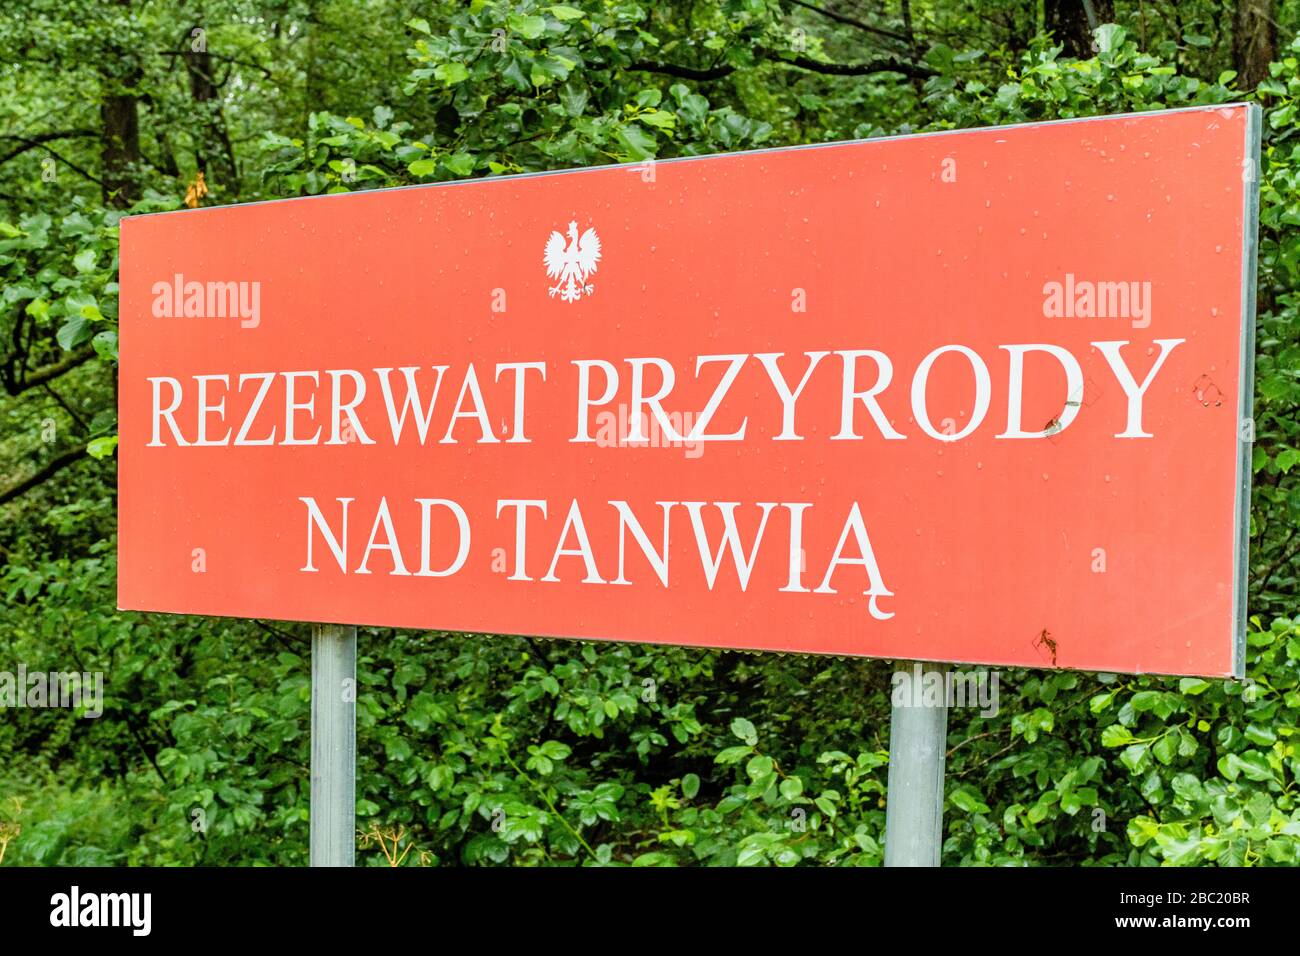 Signe annonçant la réserve naturelle nad Tanwią près de Susiec dans l'est de la Pologne. Juillet 2017. Banque D'Images